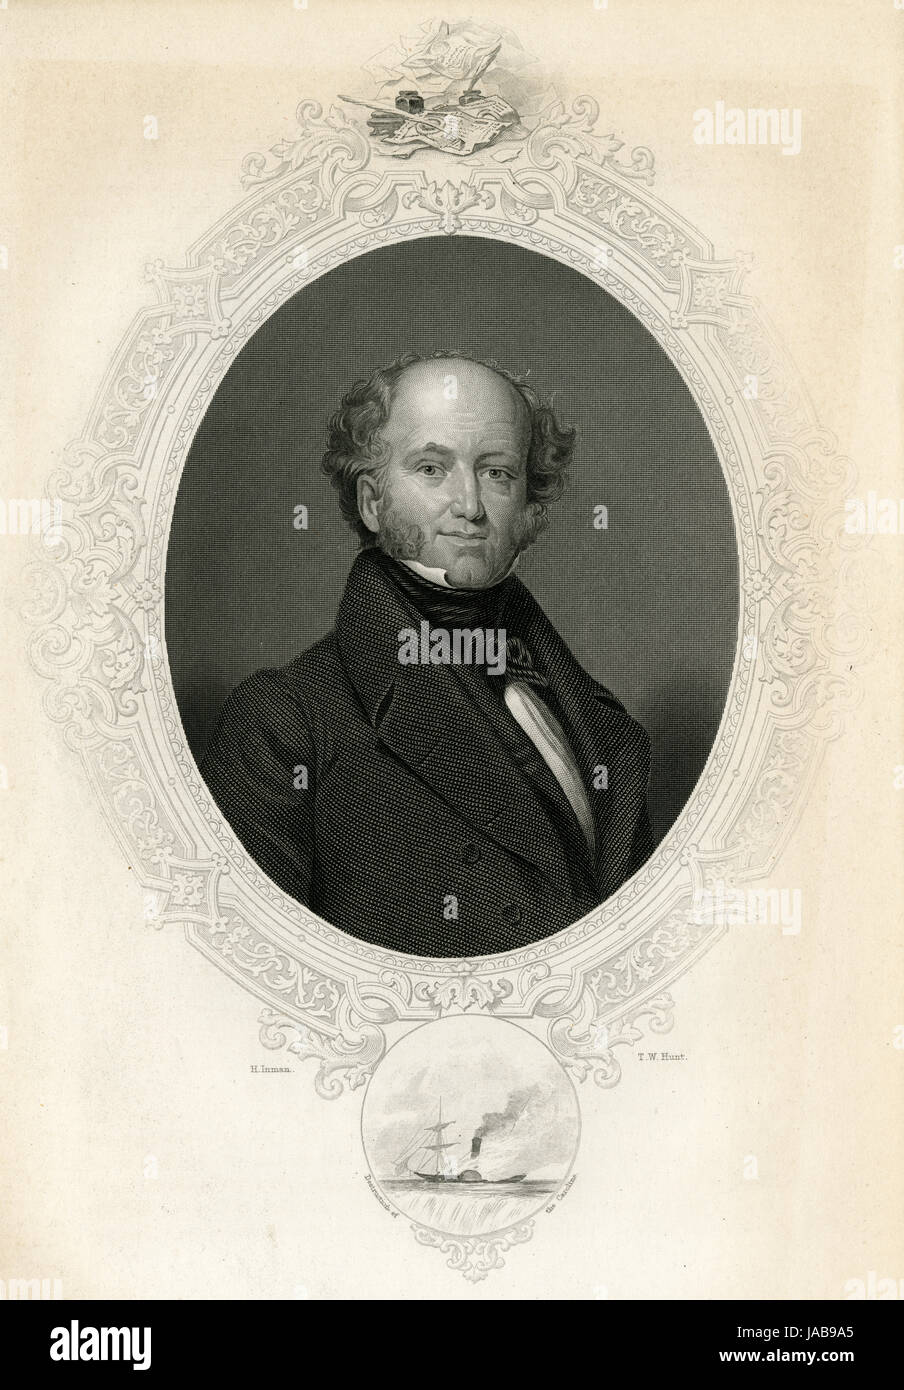 C Antique1860 gravure, Martin Van Buren. Martin Van Buren (1782-1862) était un homme politique américain qui fut le huitième président des États-Unis (1837Ð41). SOURCE : gravure originale. Banque D'Images